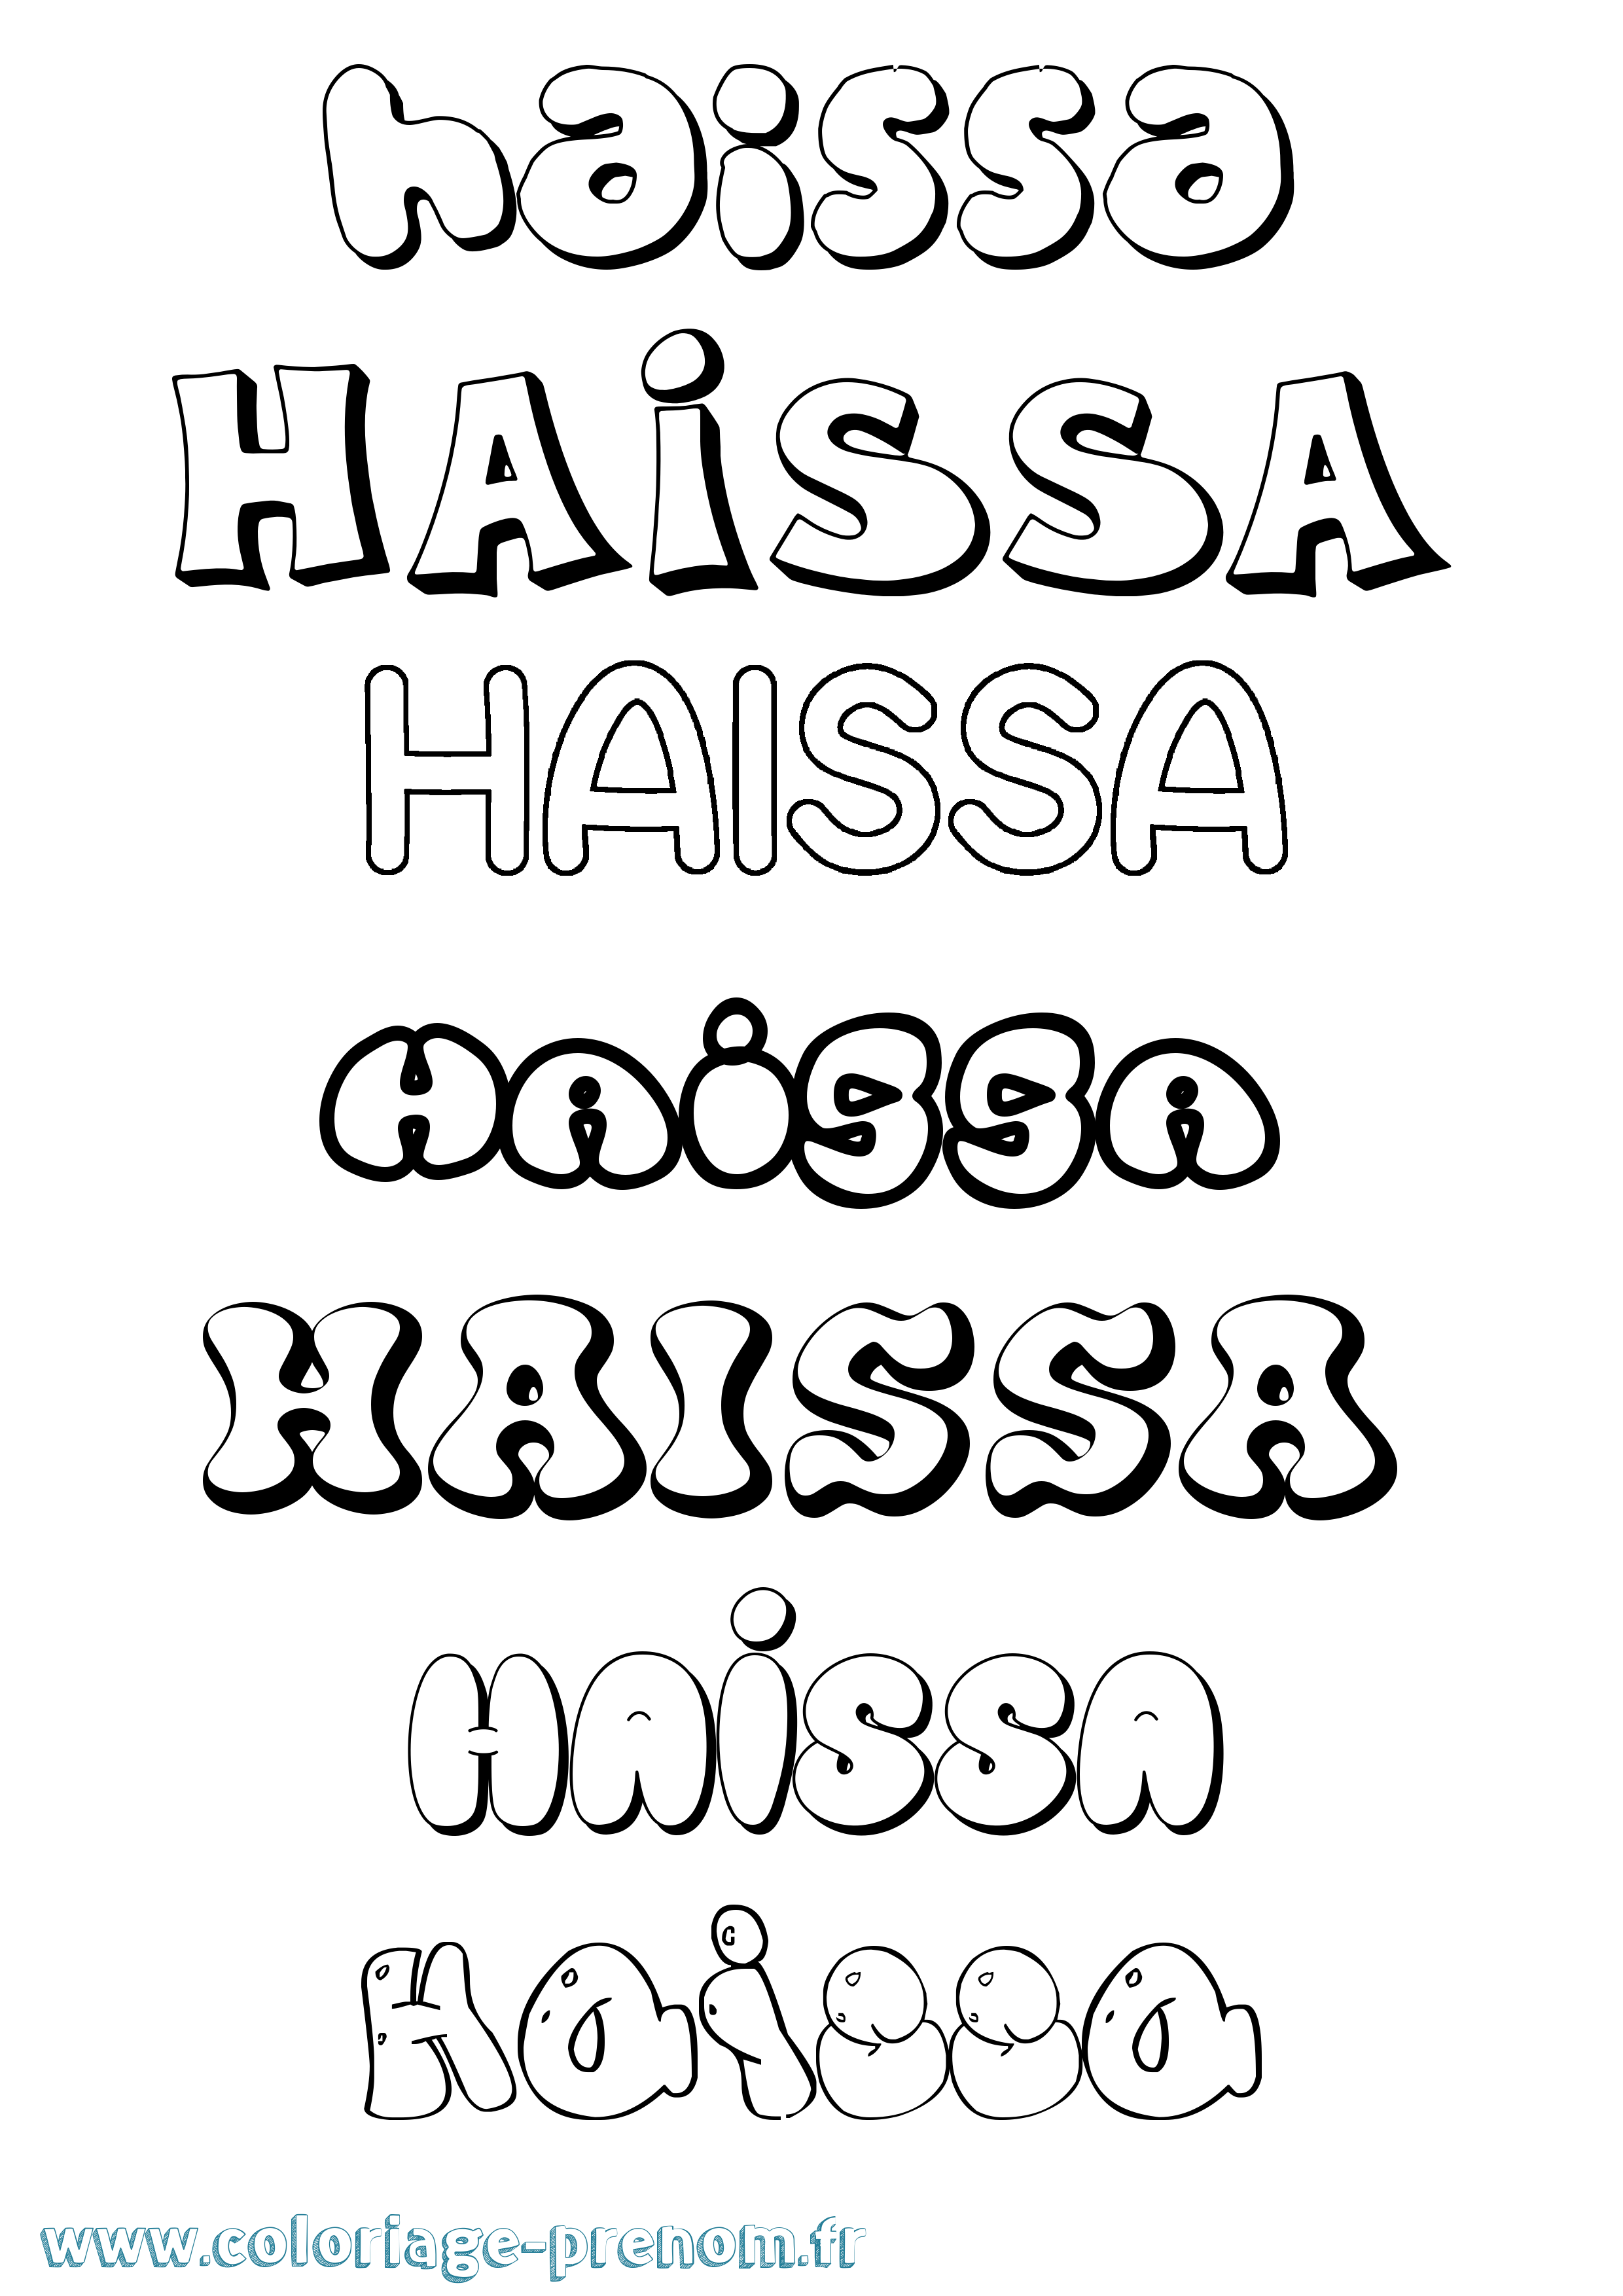 Coloriage prénom Haissa Bubble